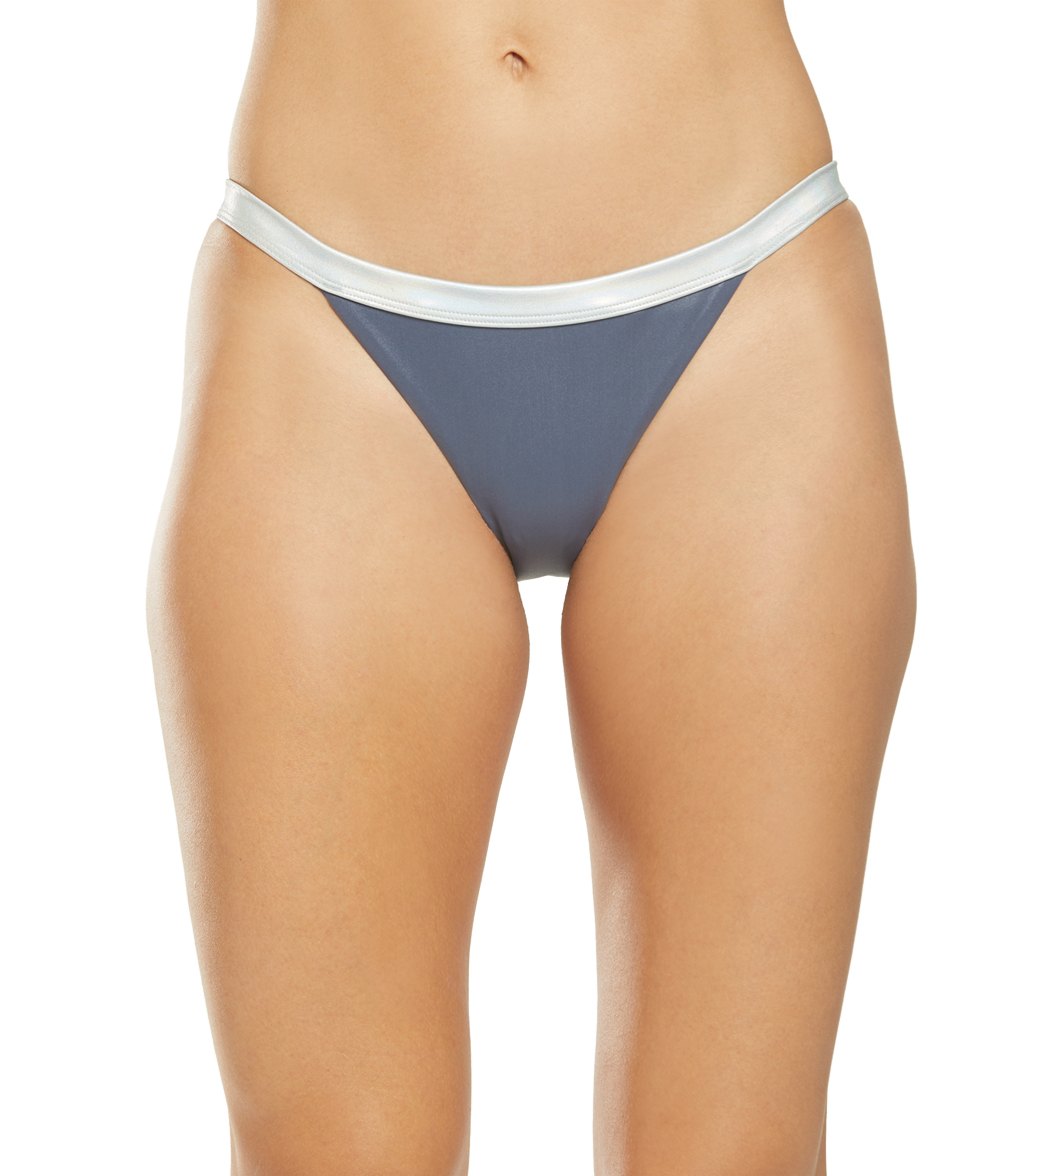 Nike Women's Flash Bikini Bottom - Monsoon Blue Xl Size Xl Polyester - Swimoutlet.com